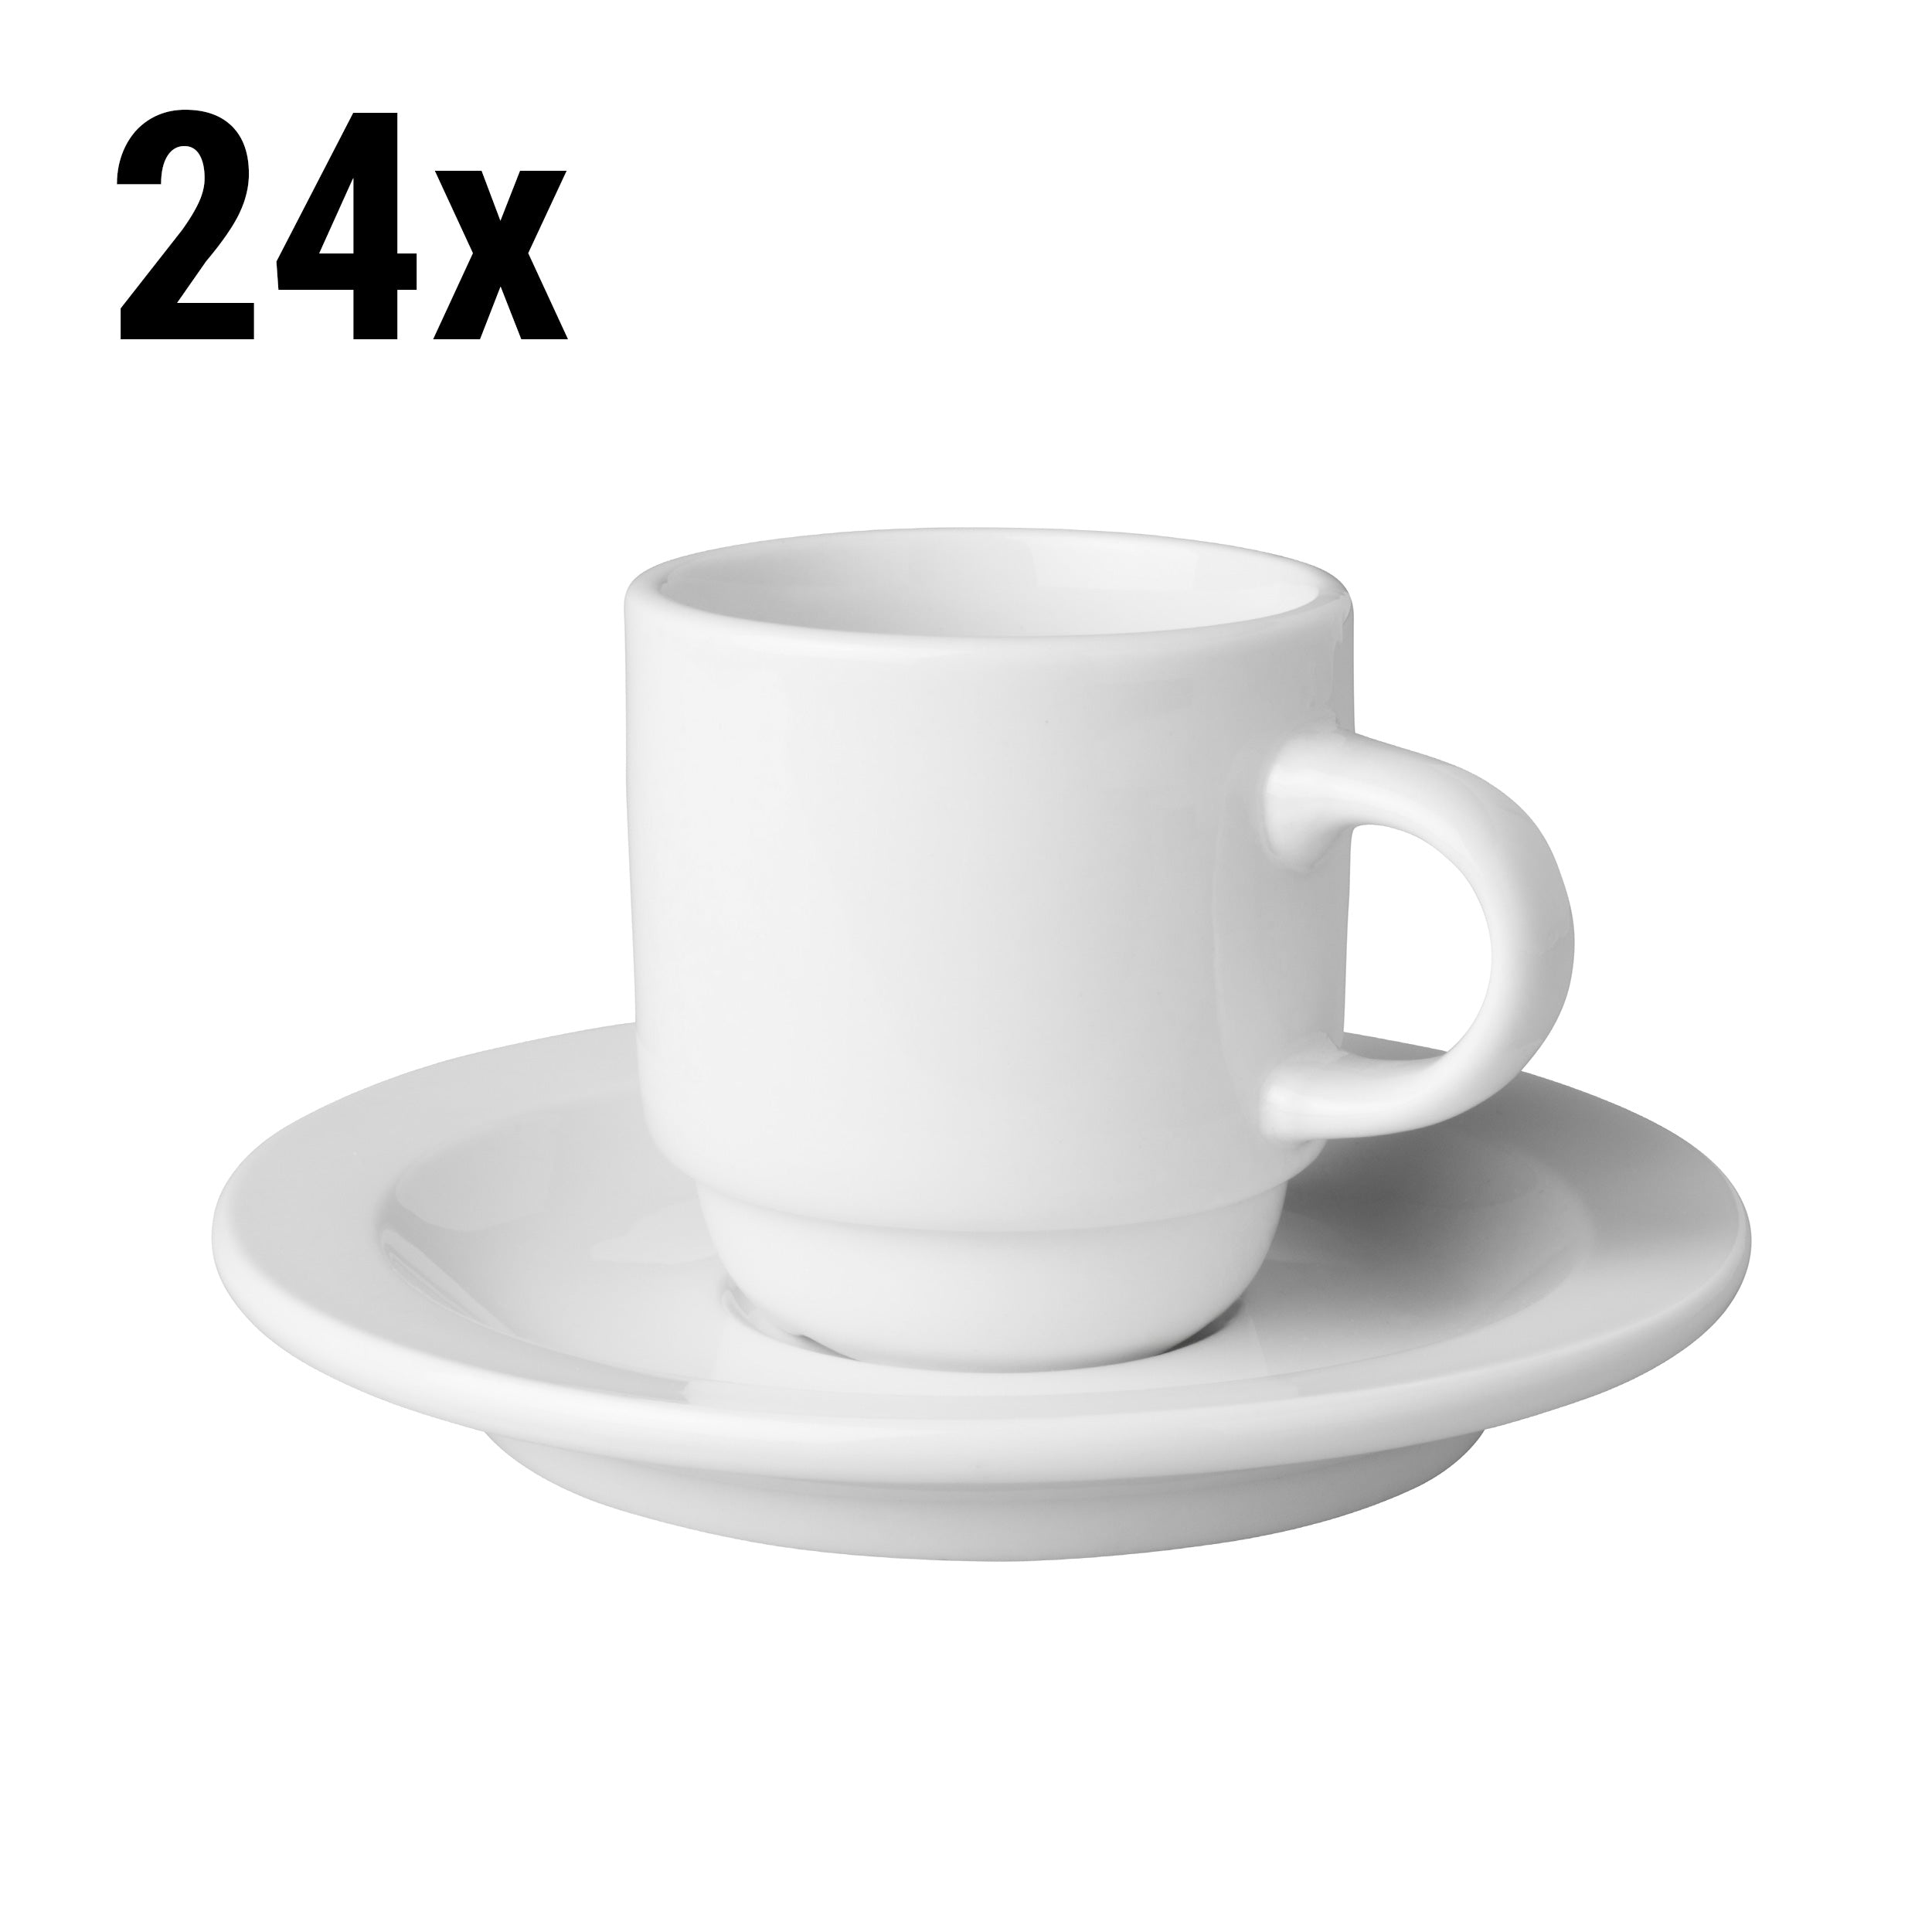 (24 stk.) Kaffekopper + underkopper Mammoet - 14 cl - Hvid